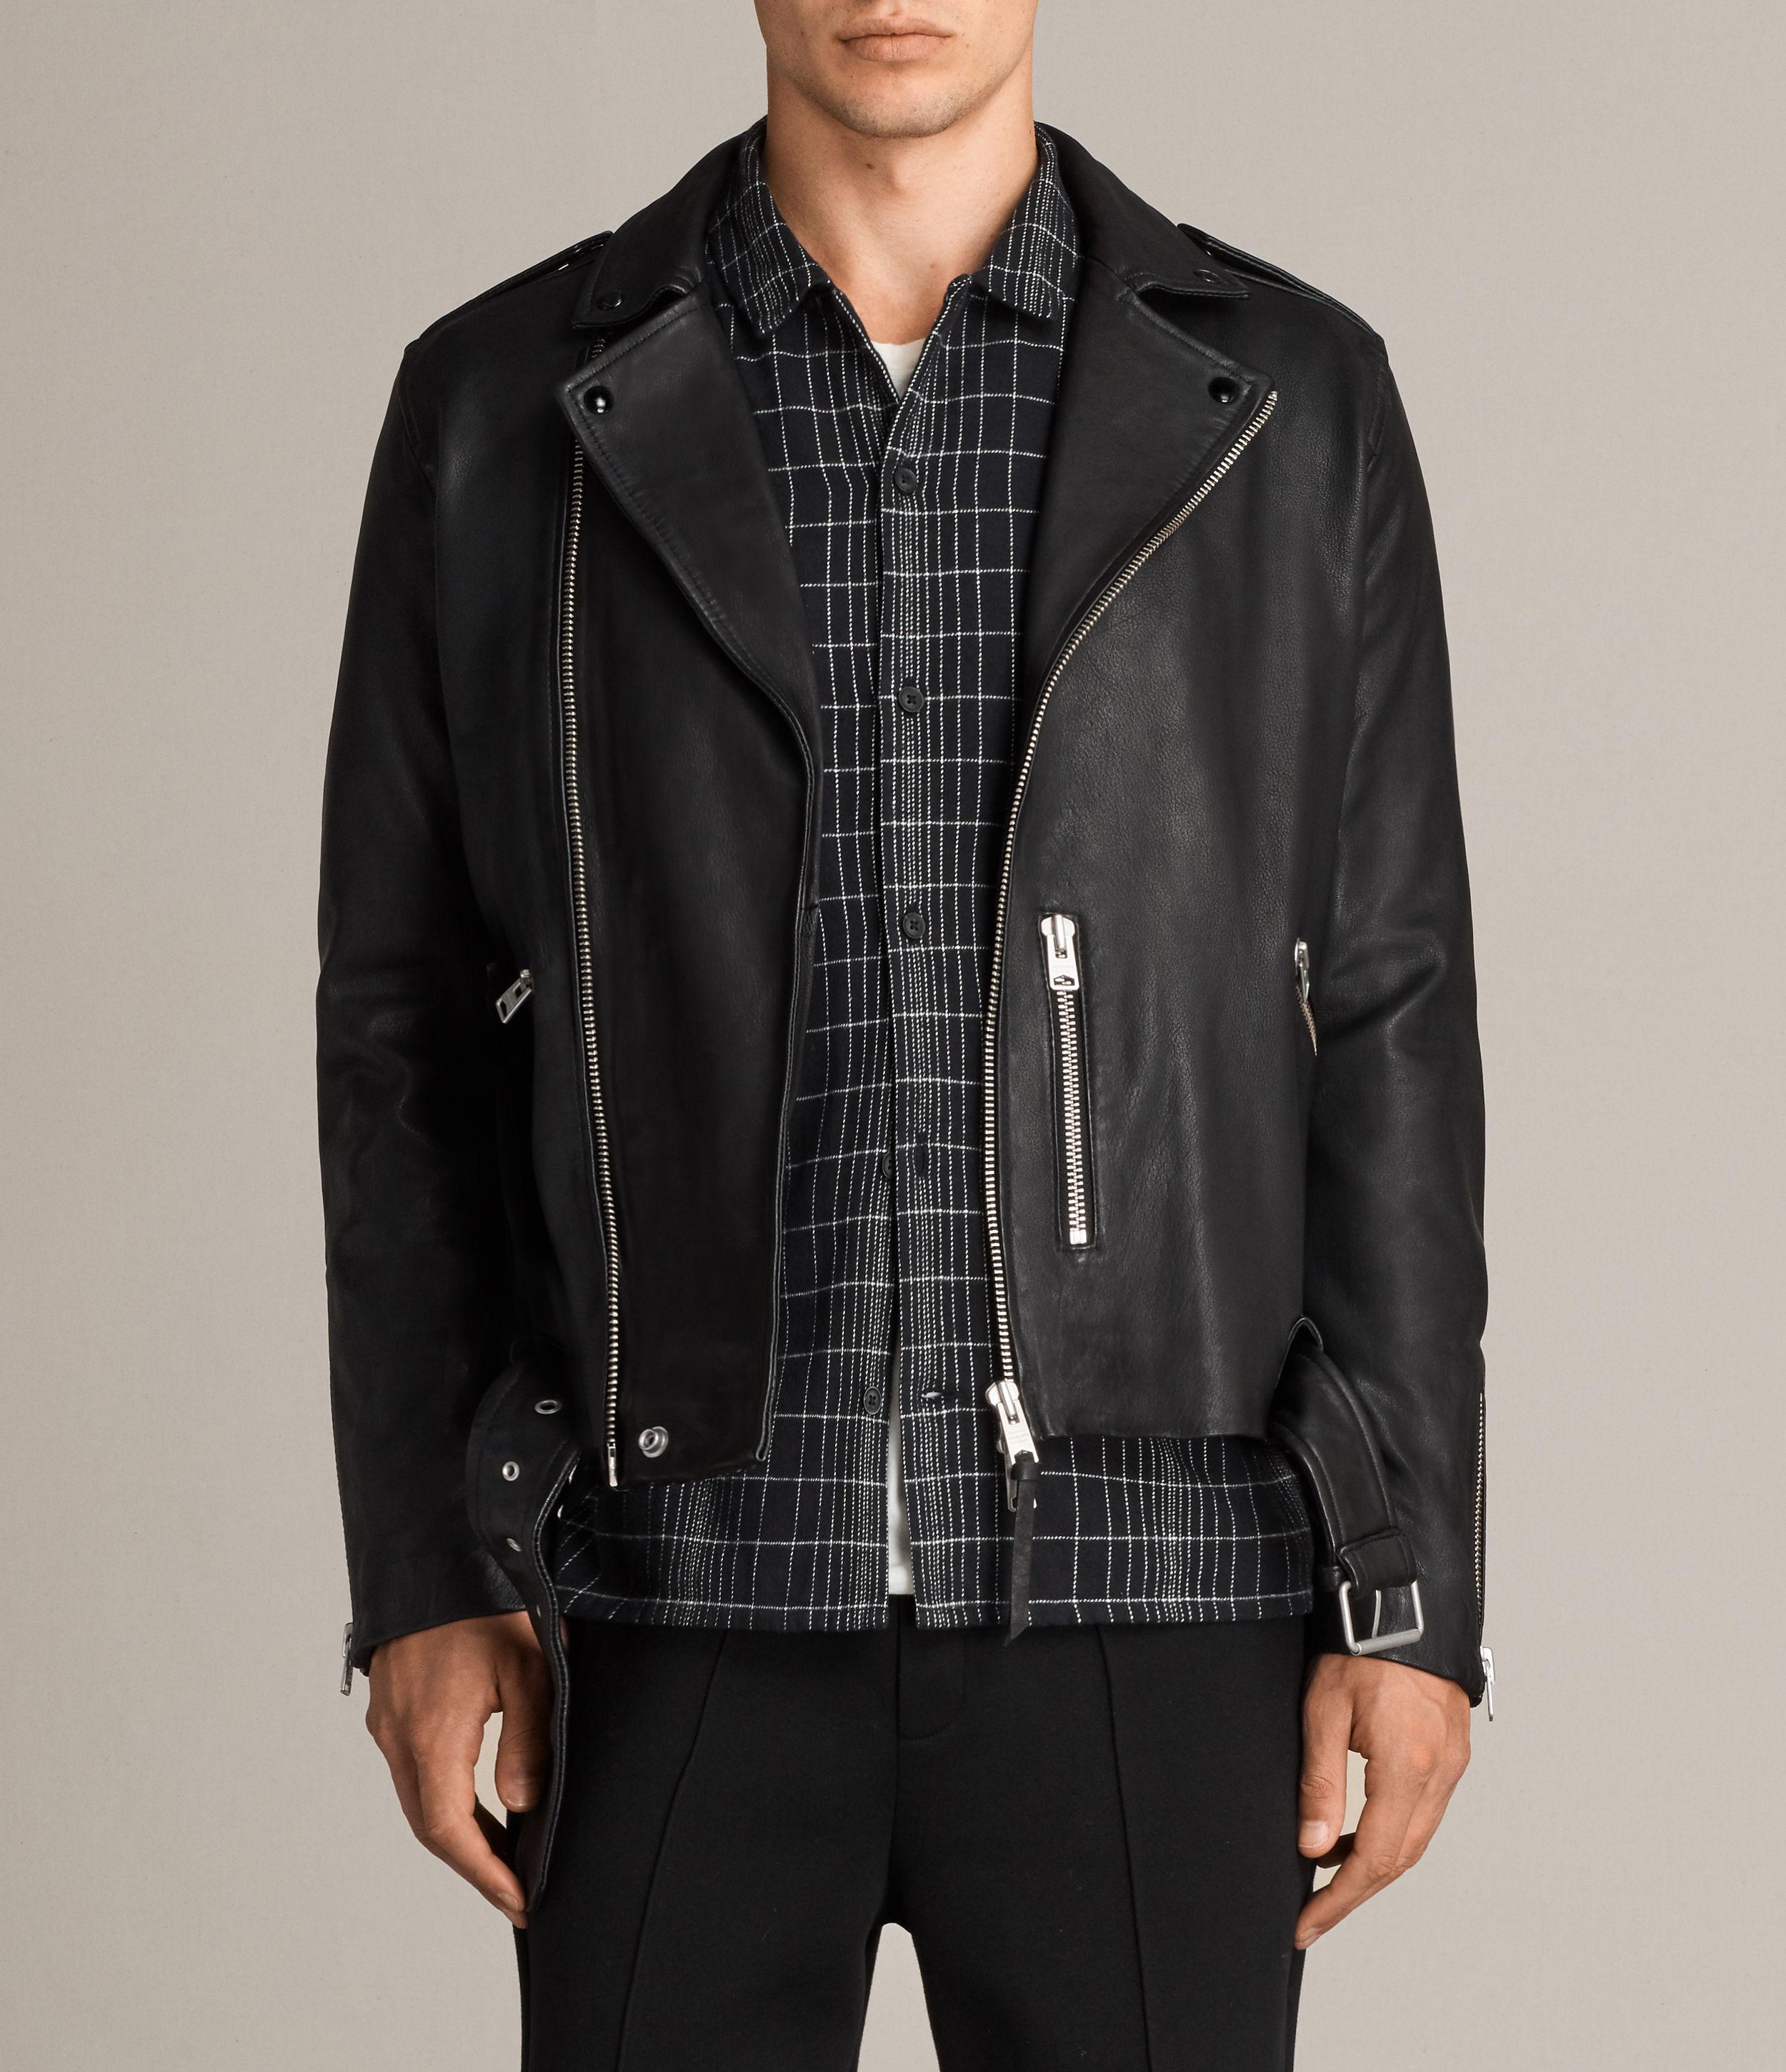 AllSaints Kaho Leather Biker Jacket in Black for Men - Save 30% - Lyst